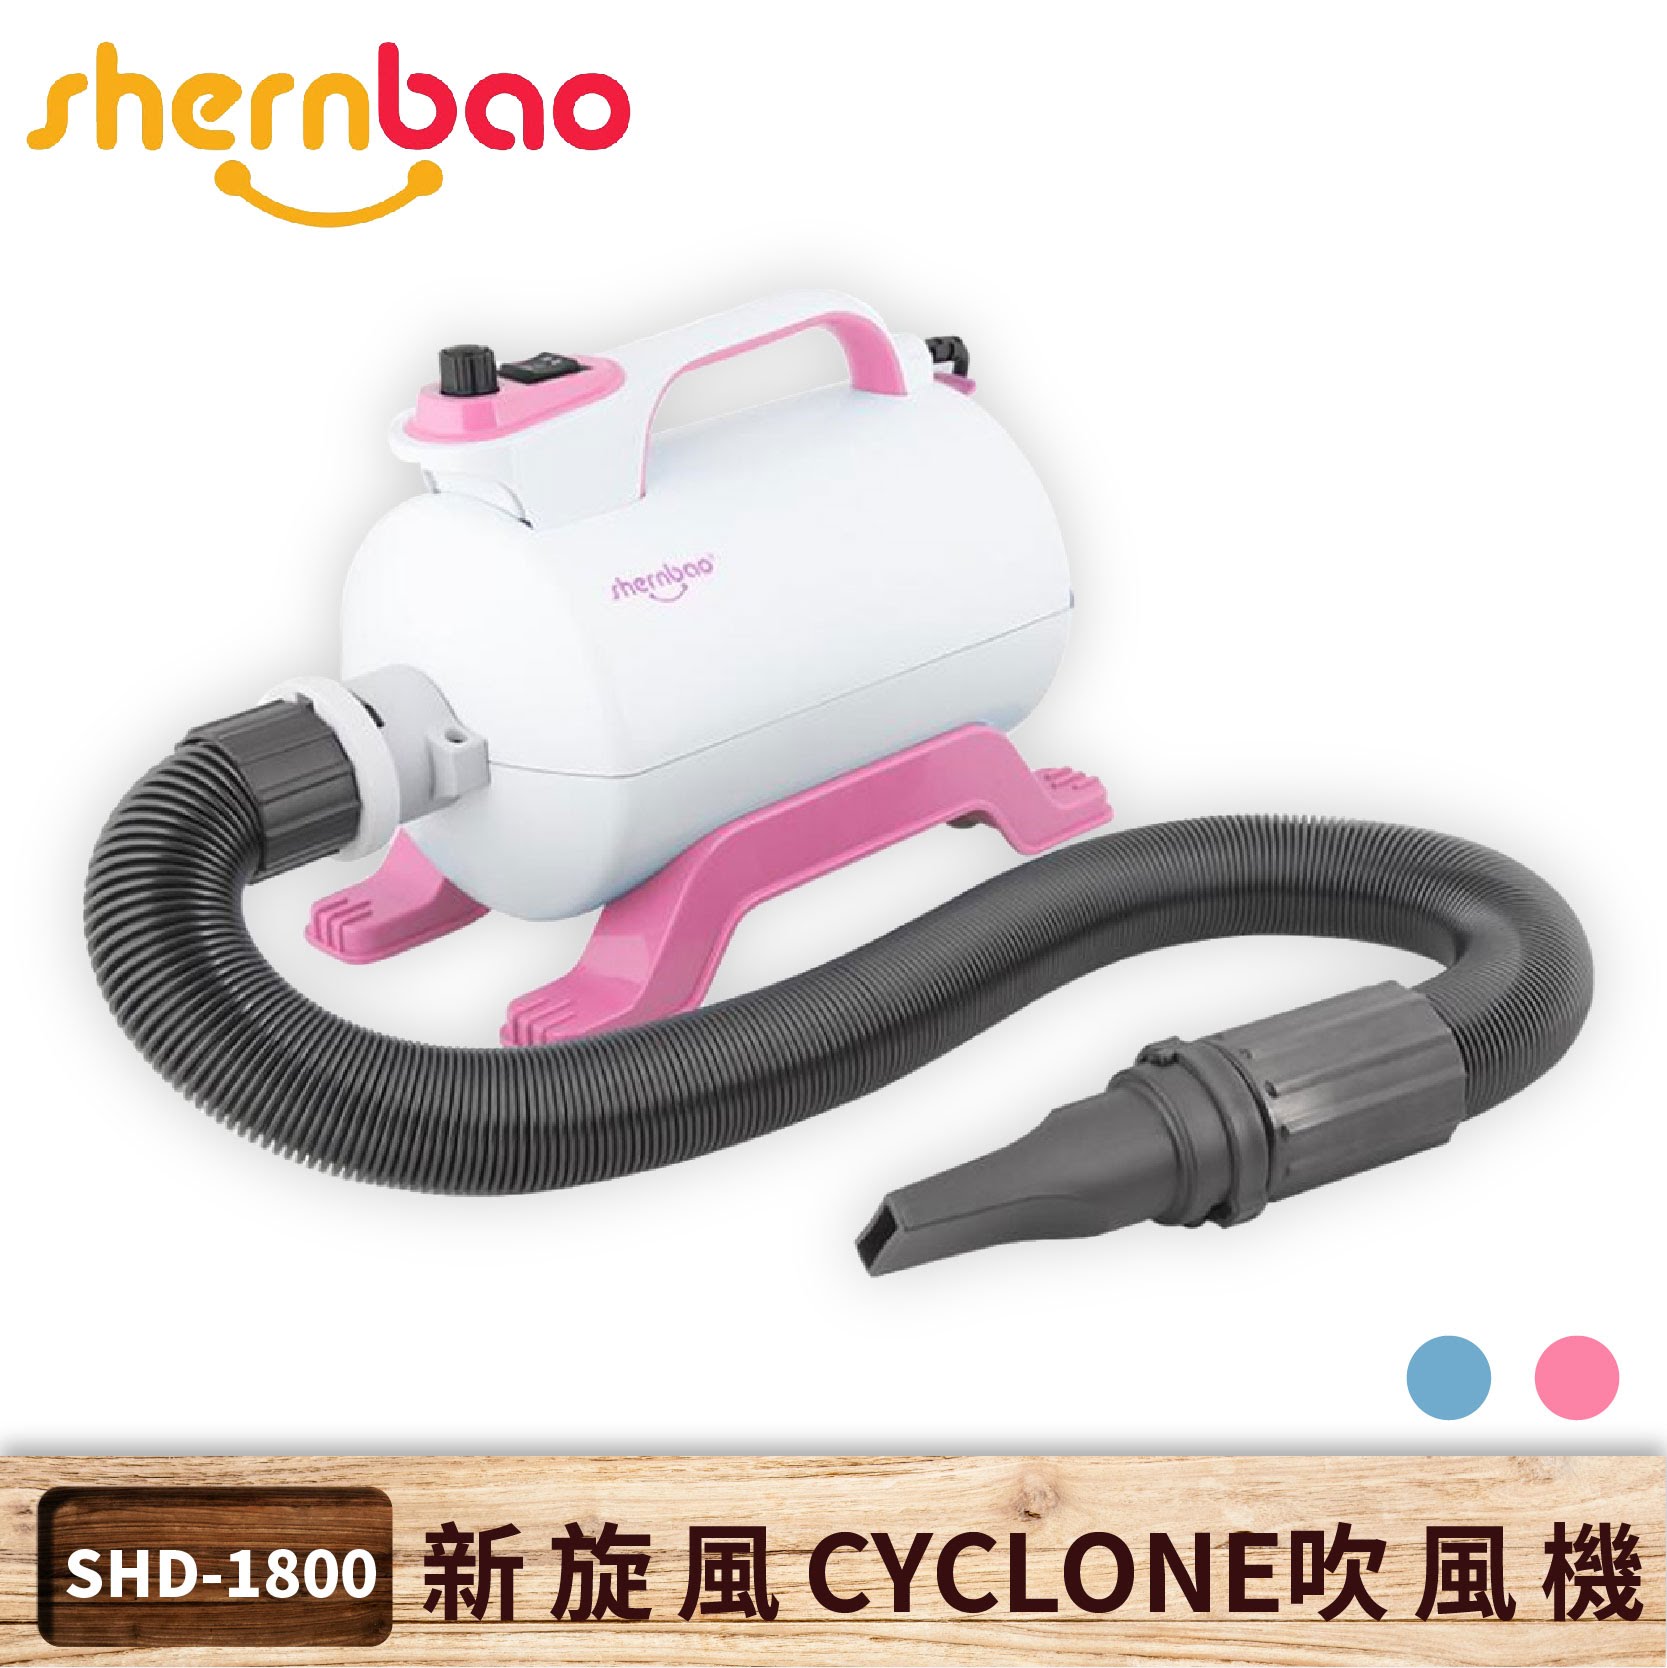 【神寶】新旋風 CYCLONE 寵物吹風機 SHD-1800 粉紅色 一般用單馬達 吹水機 清潔美容 寵物店 貓狗